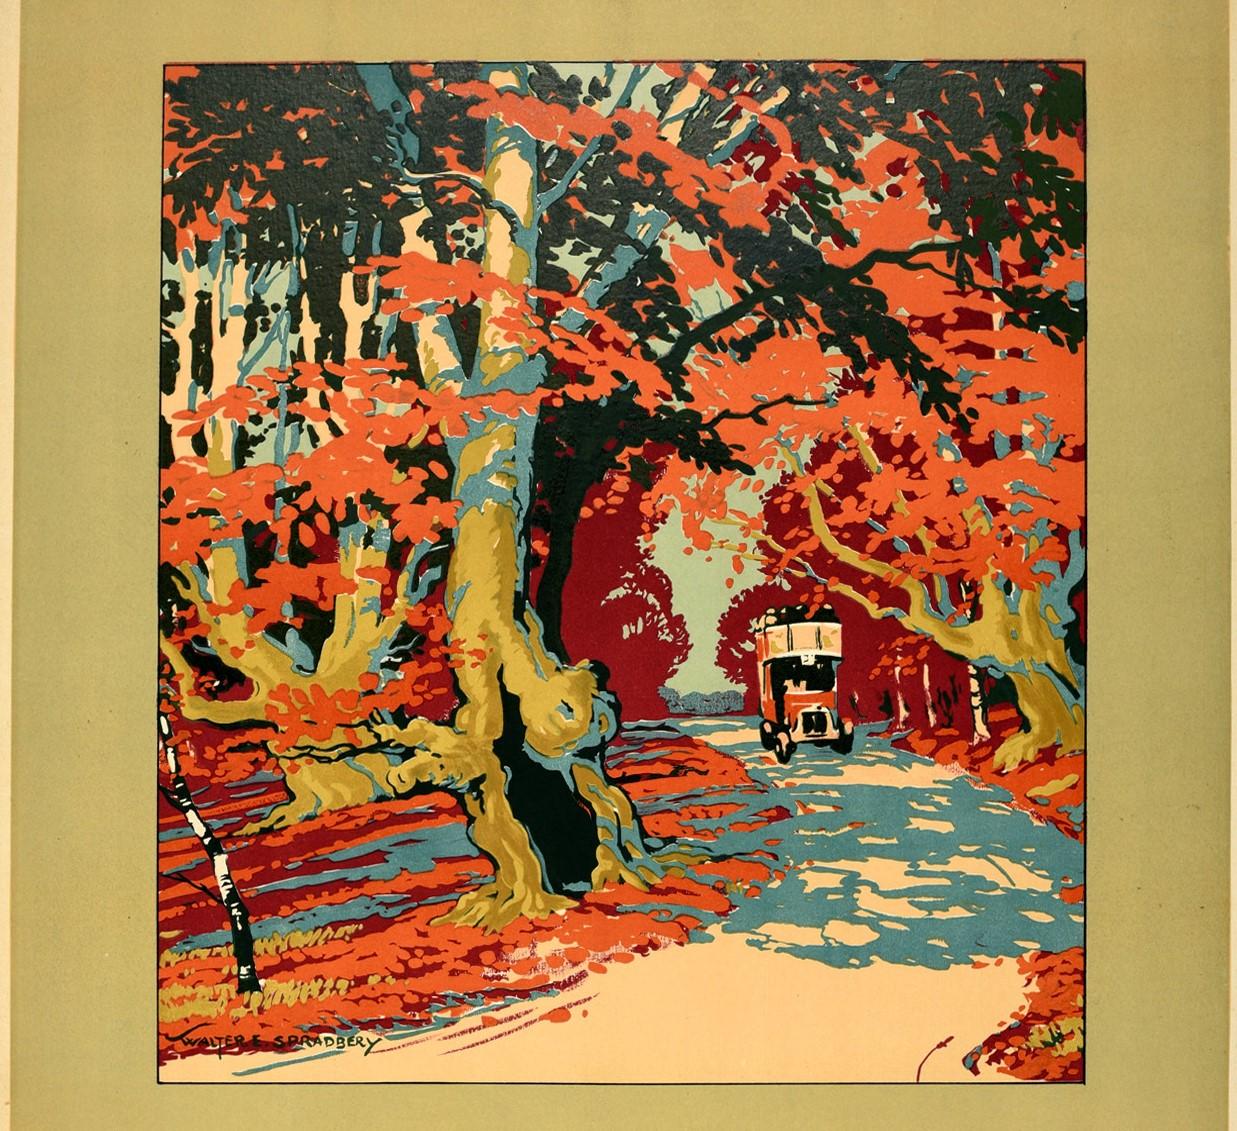 Original London Transport Plakat für Burnham Beeches by Motor Bus mit einem großartigen Kunstwerk des bekannten britischen Künstlers Walter E. Spradbery (1889-1969), das einen ikonischen roten Londoner Bus zeigt, der dem Betrachter auf einer Straße